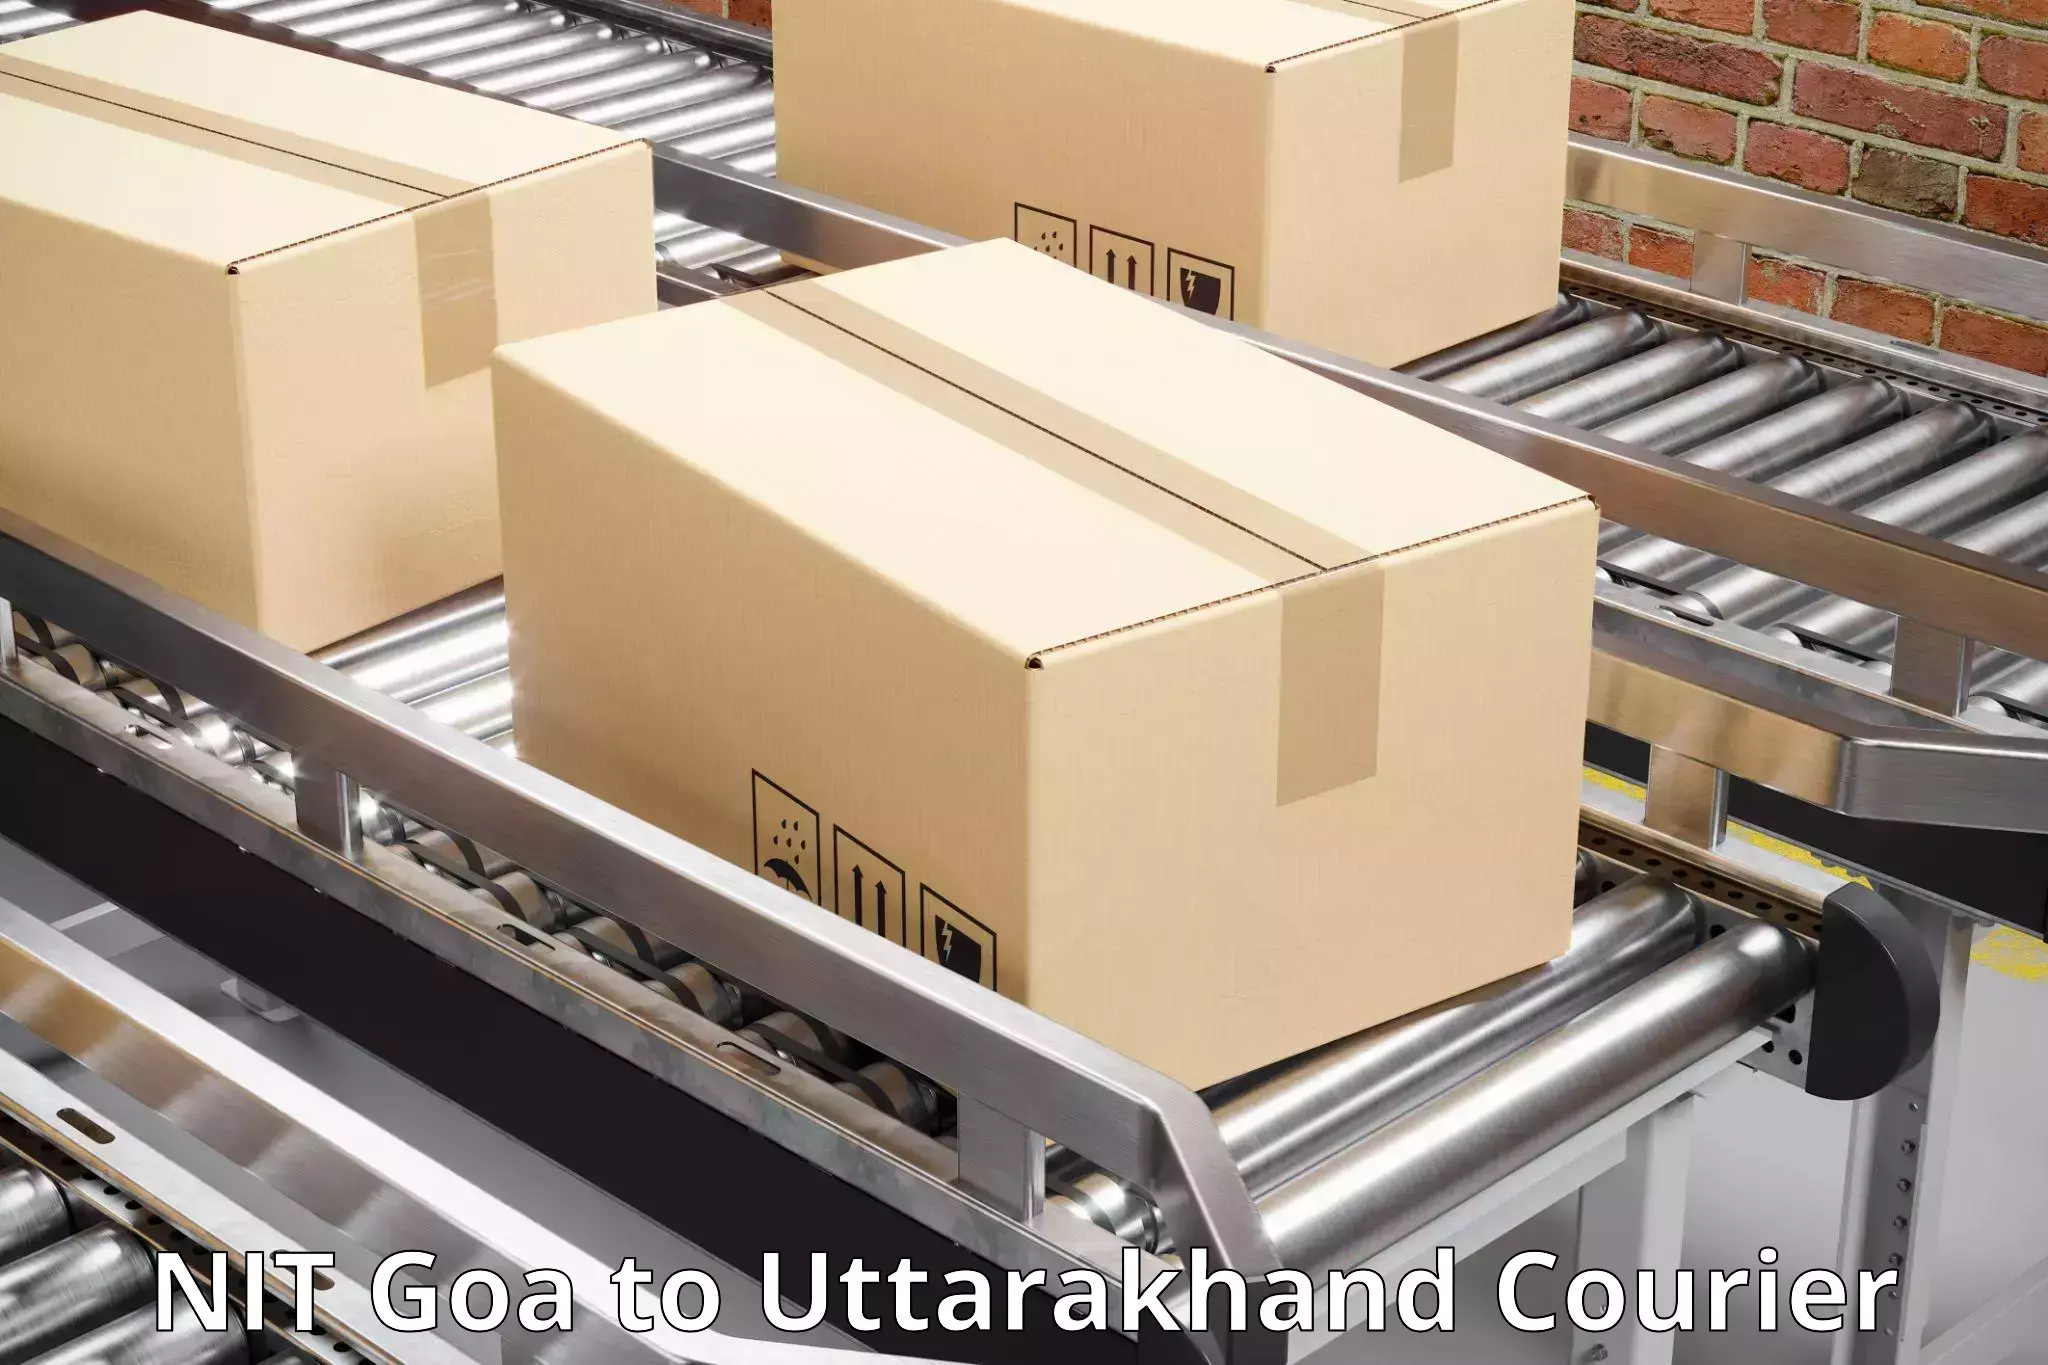 Reliable parcel services NIT Goa to Dehradun